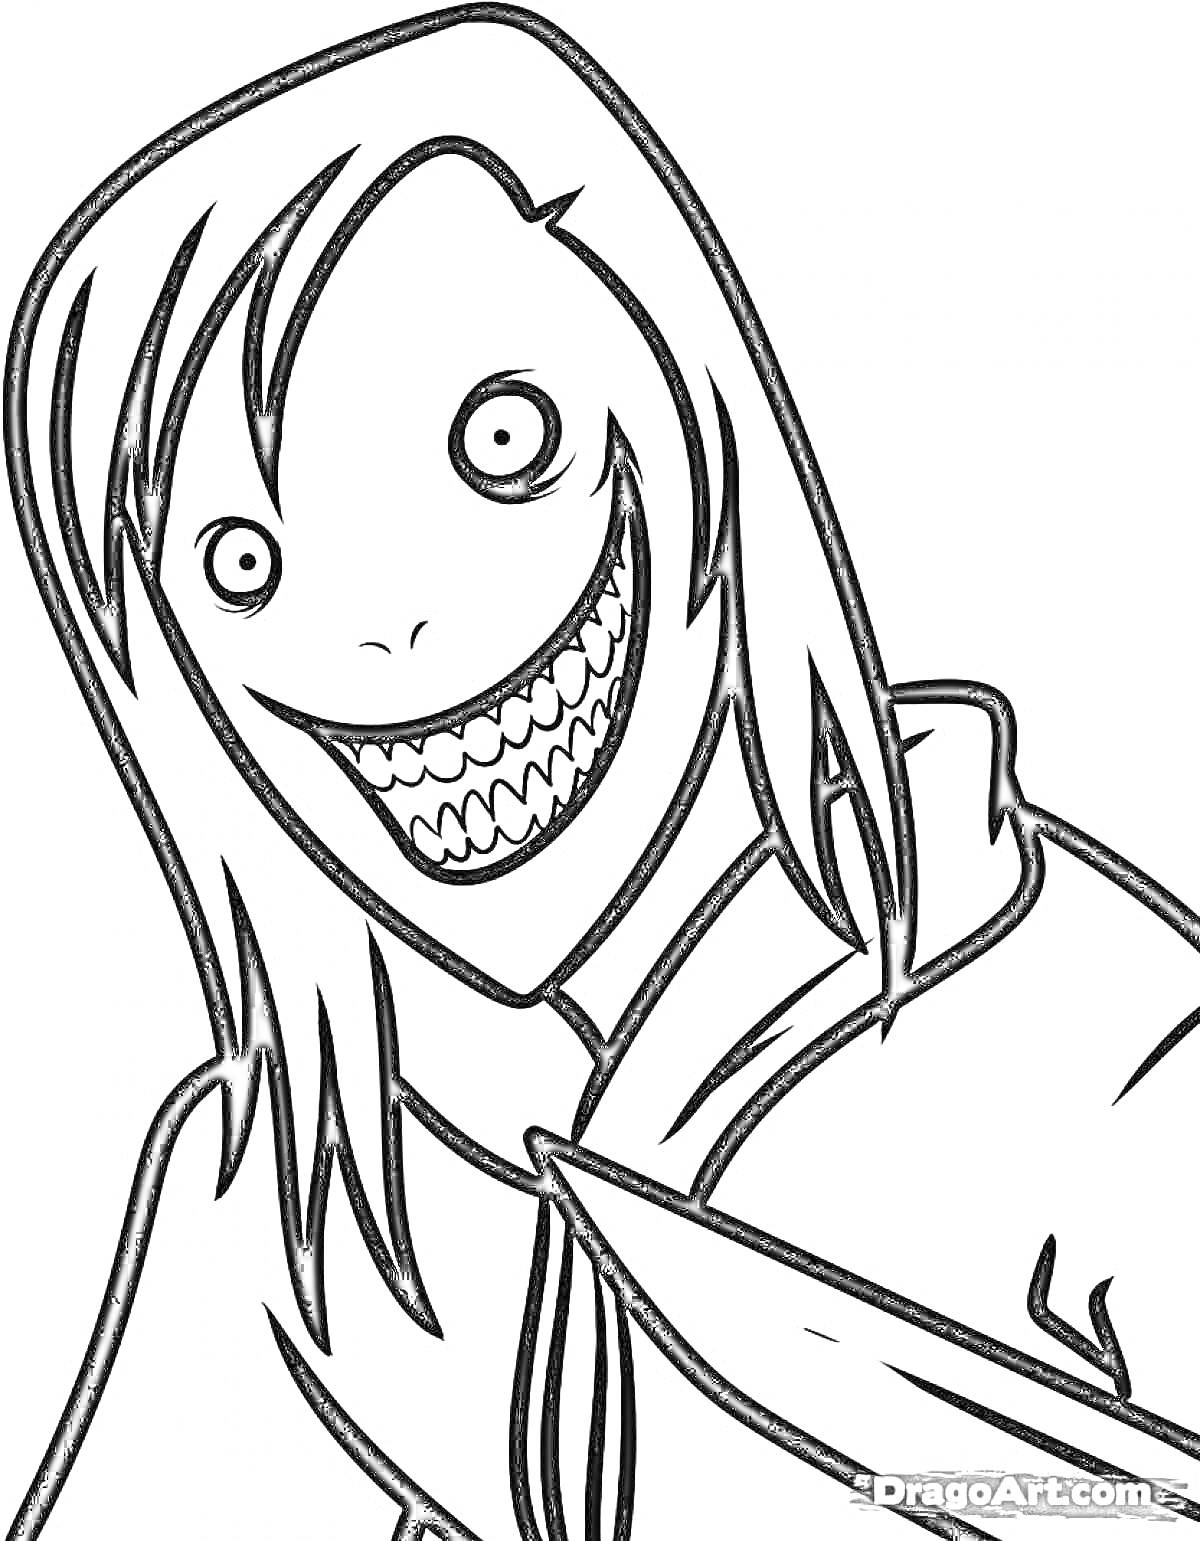 Раскраска Рисунок в стиле Момо с длинными волосами и зловещей улыбкой